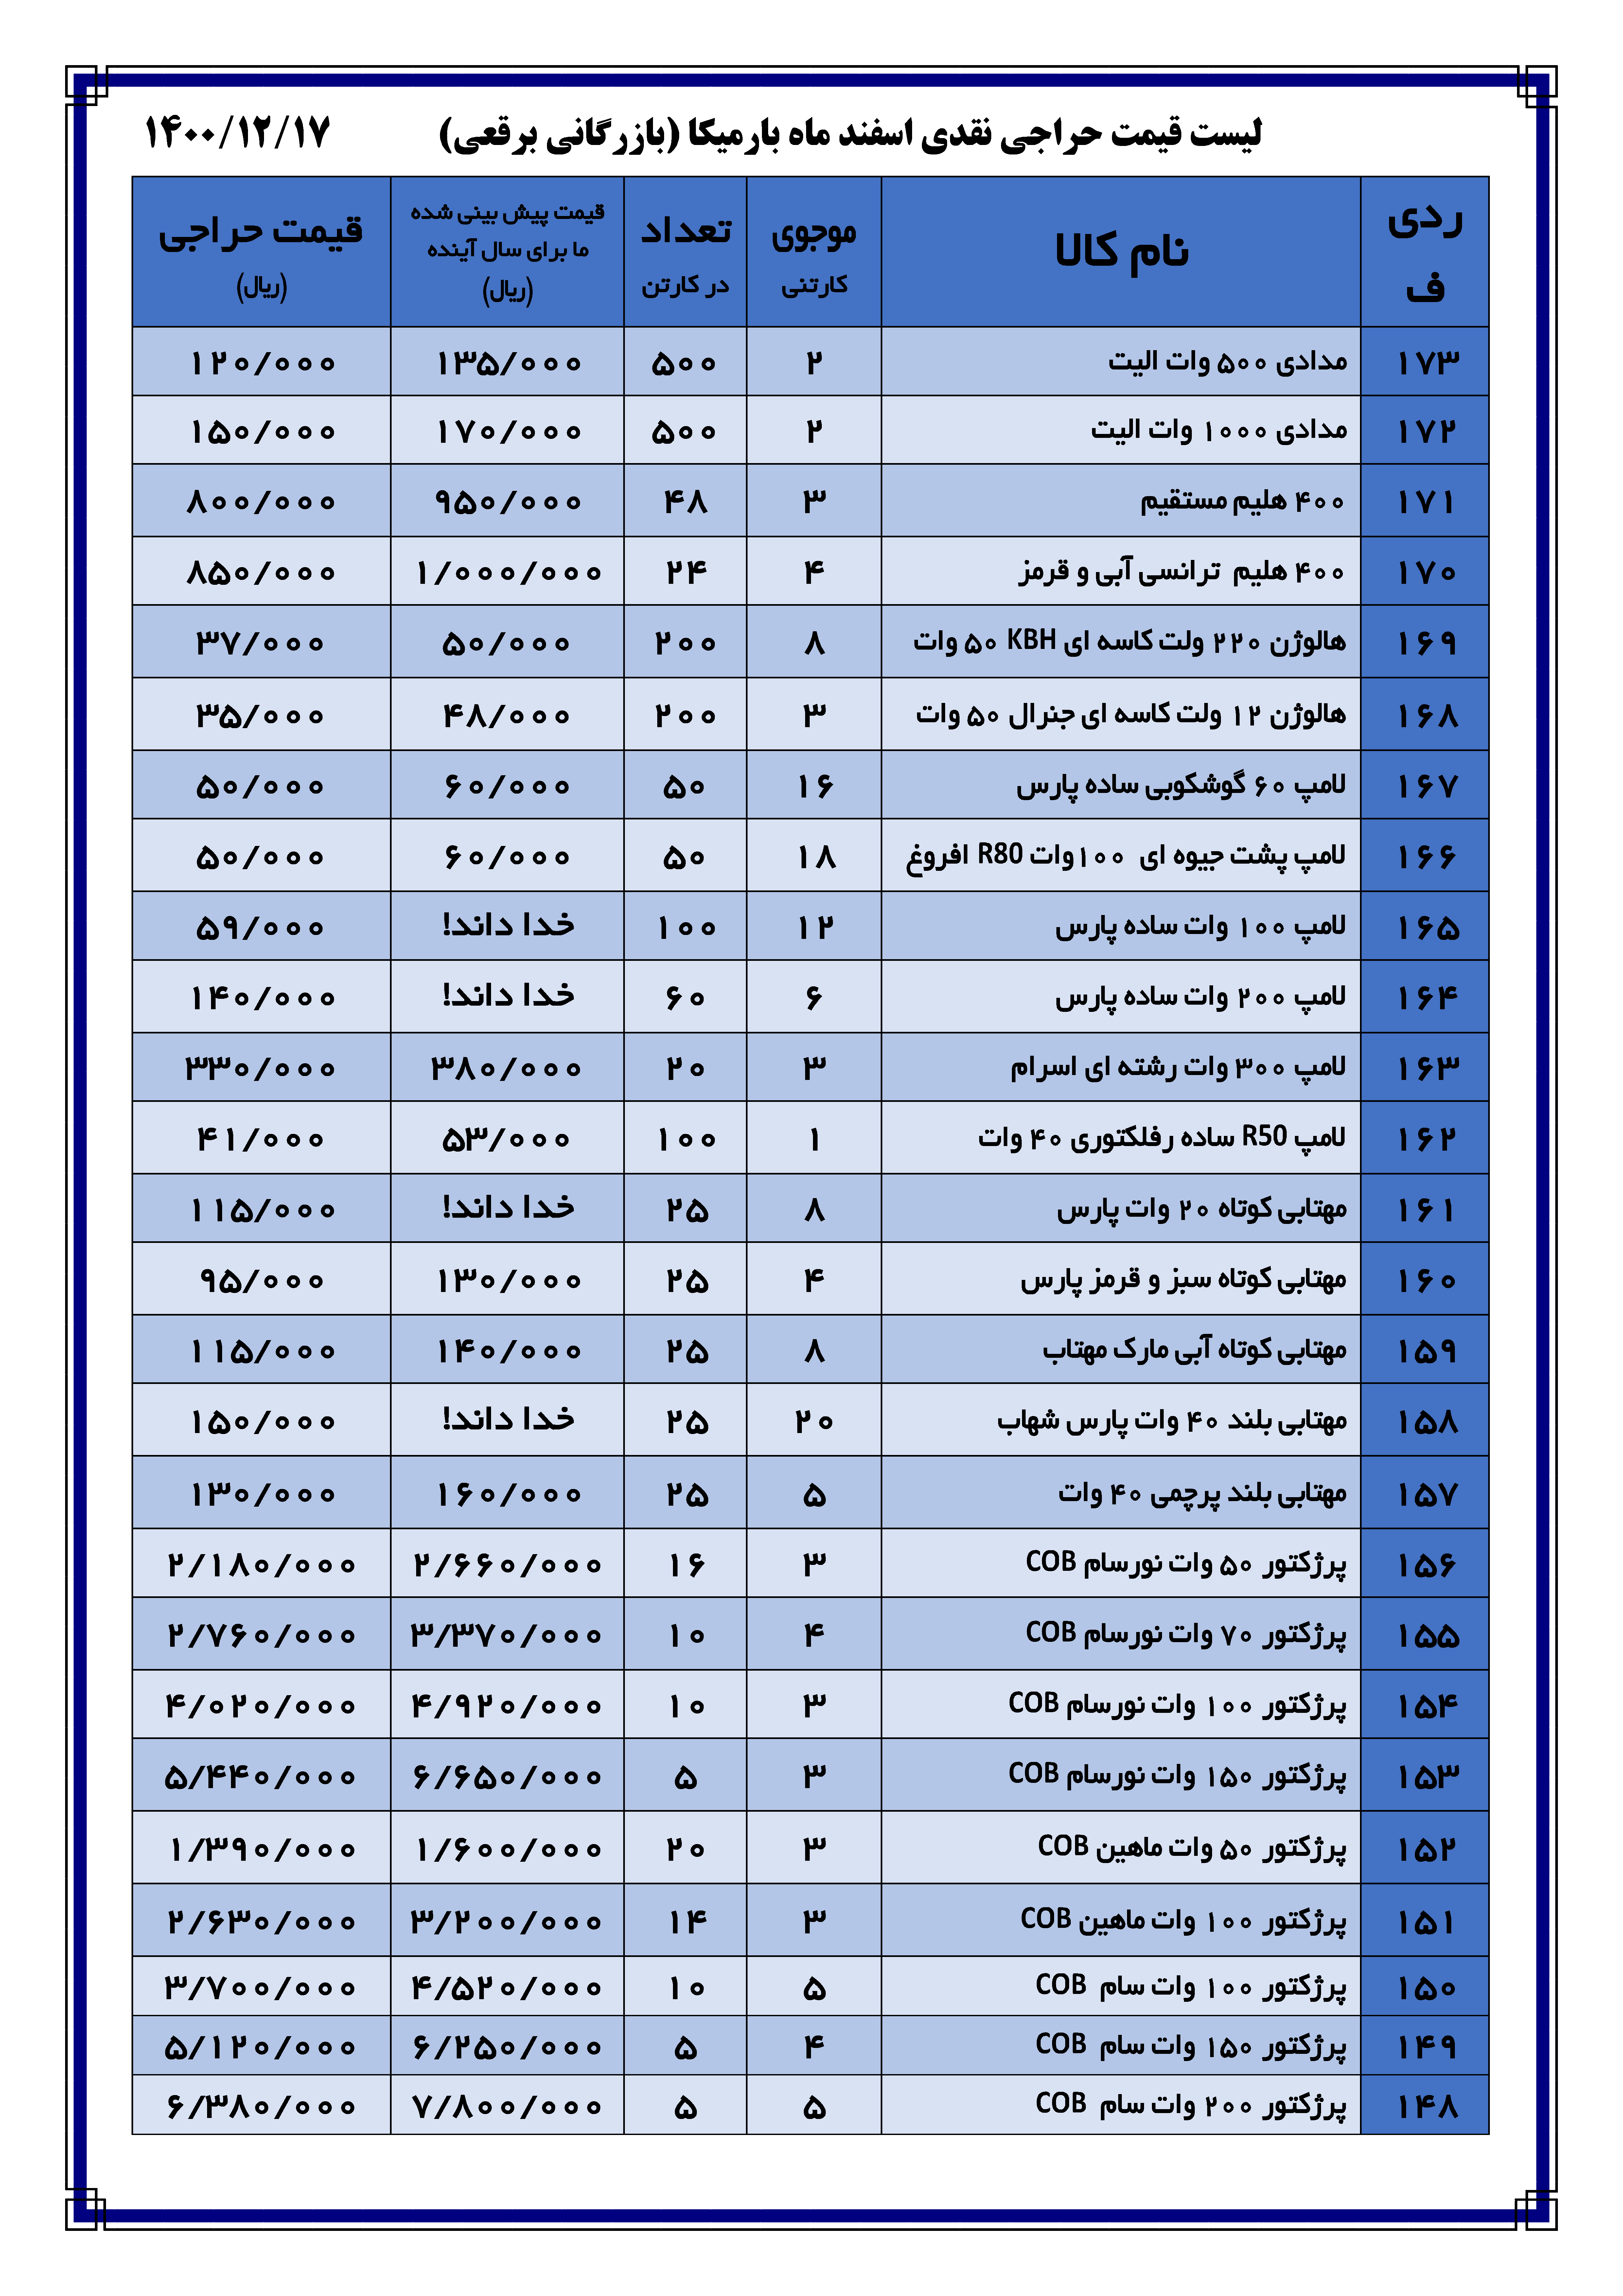 لیست قیمت| بارمیکا - بازرگانی برقعی | عمده فروشی لوازم الکتریکی و لوازم برقی ساختمان در تهران لاله زار